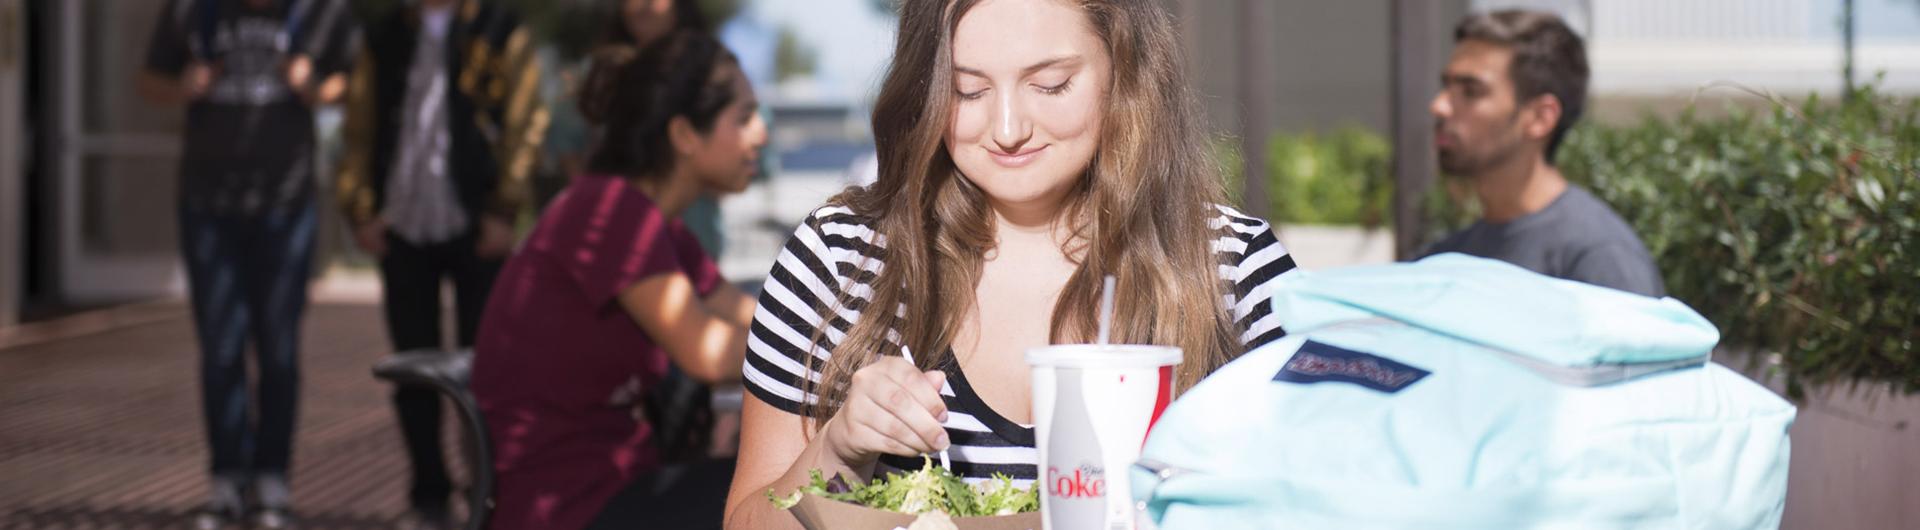 girl eating lunch